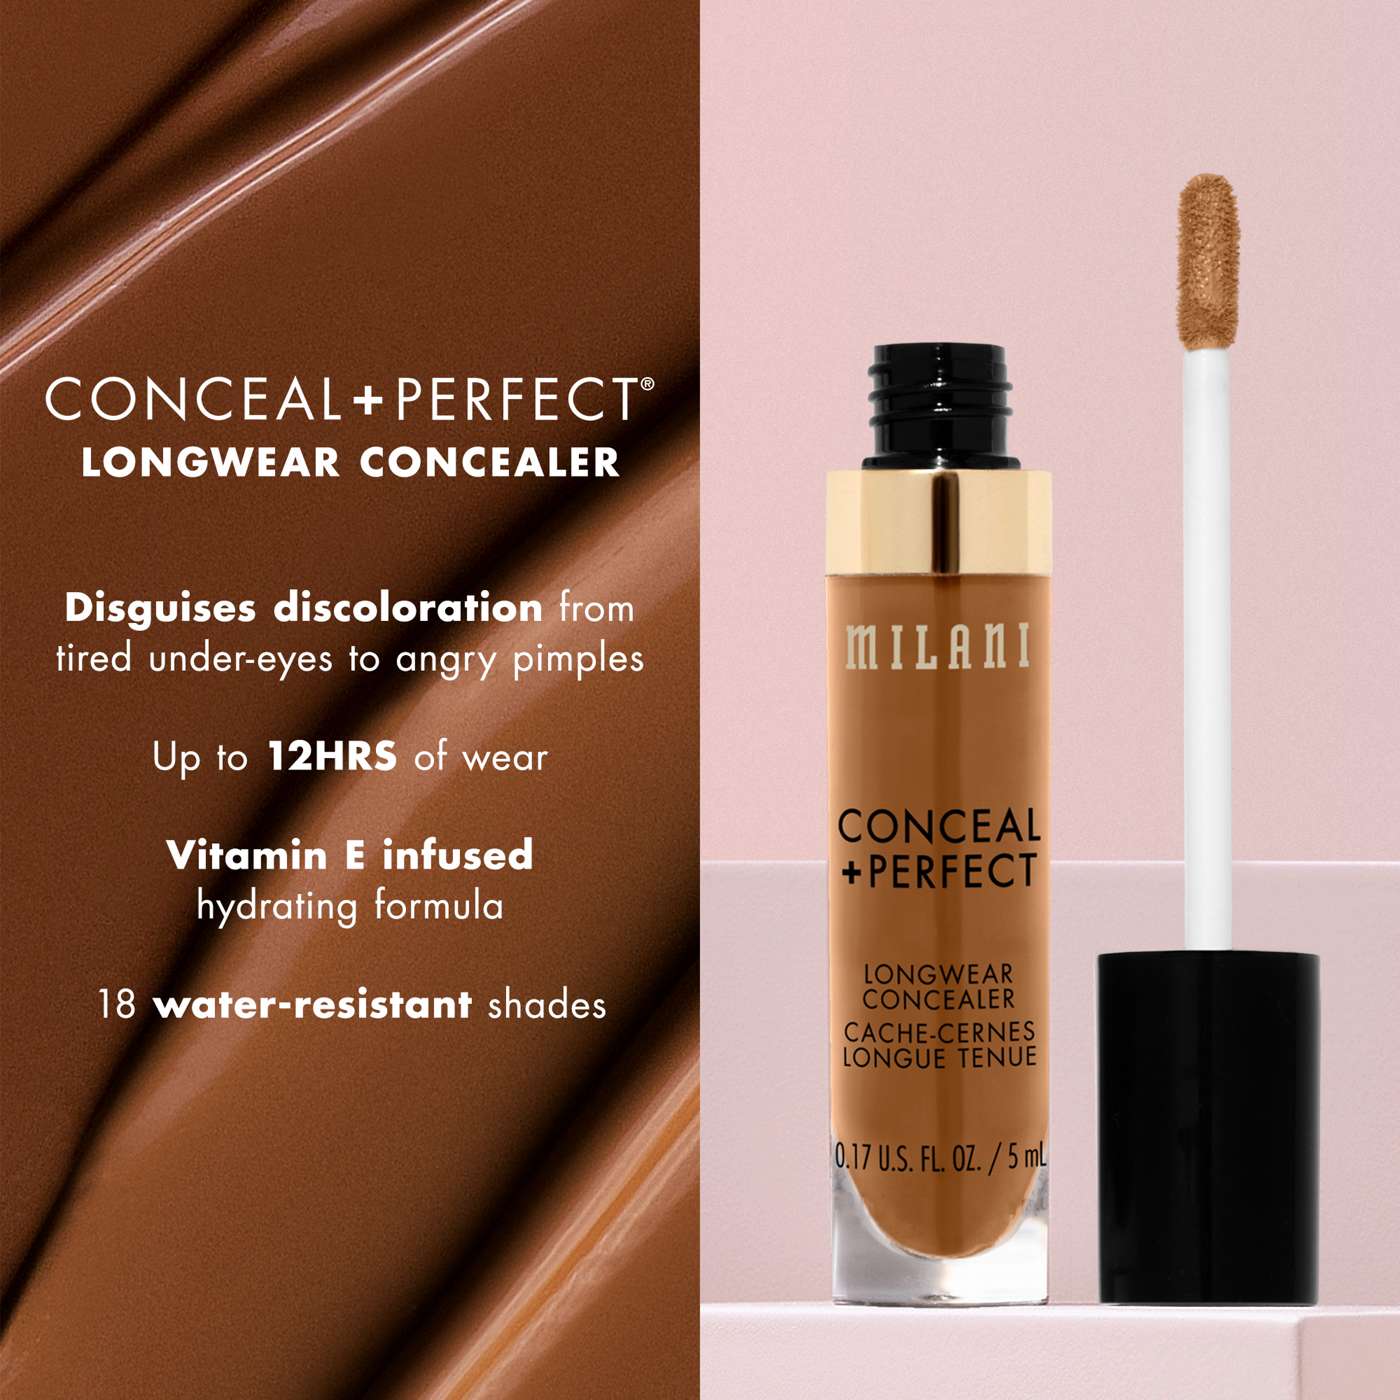 Milani Conceal +Perfect Longwear Concealer - Medium Beige; image 2 of 3